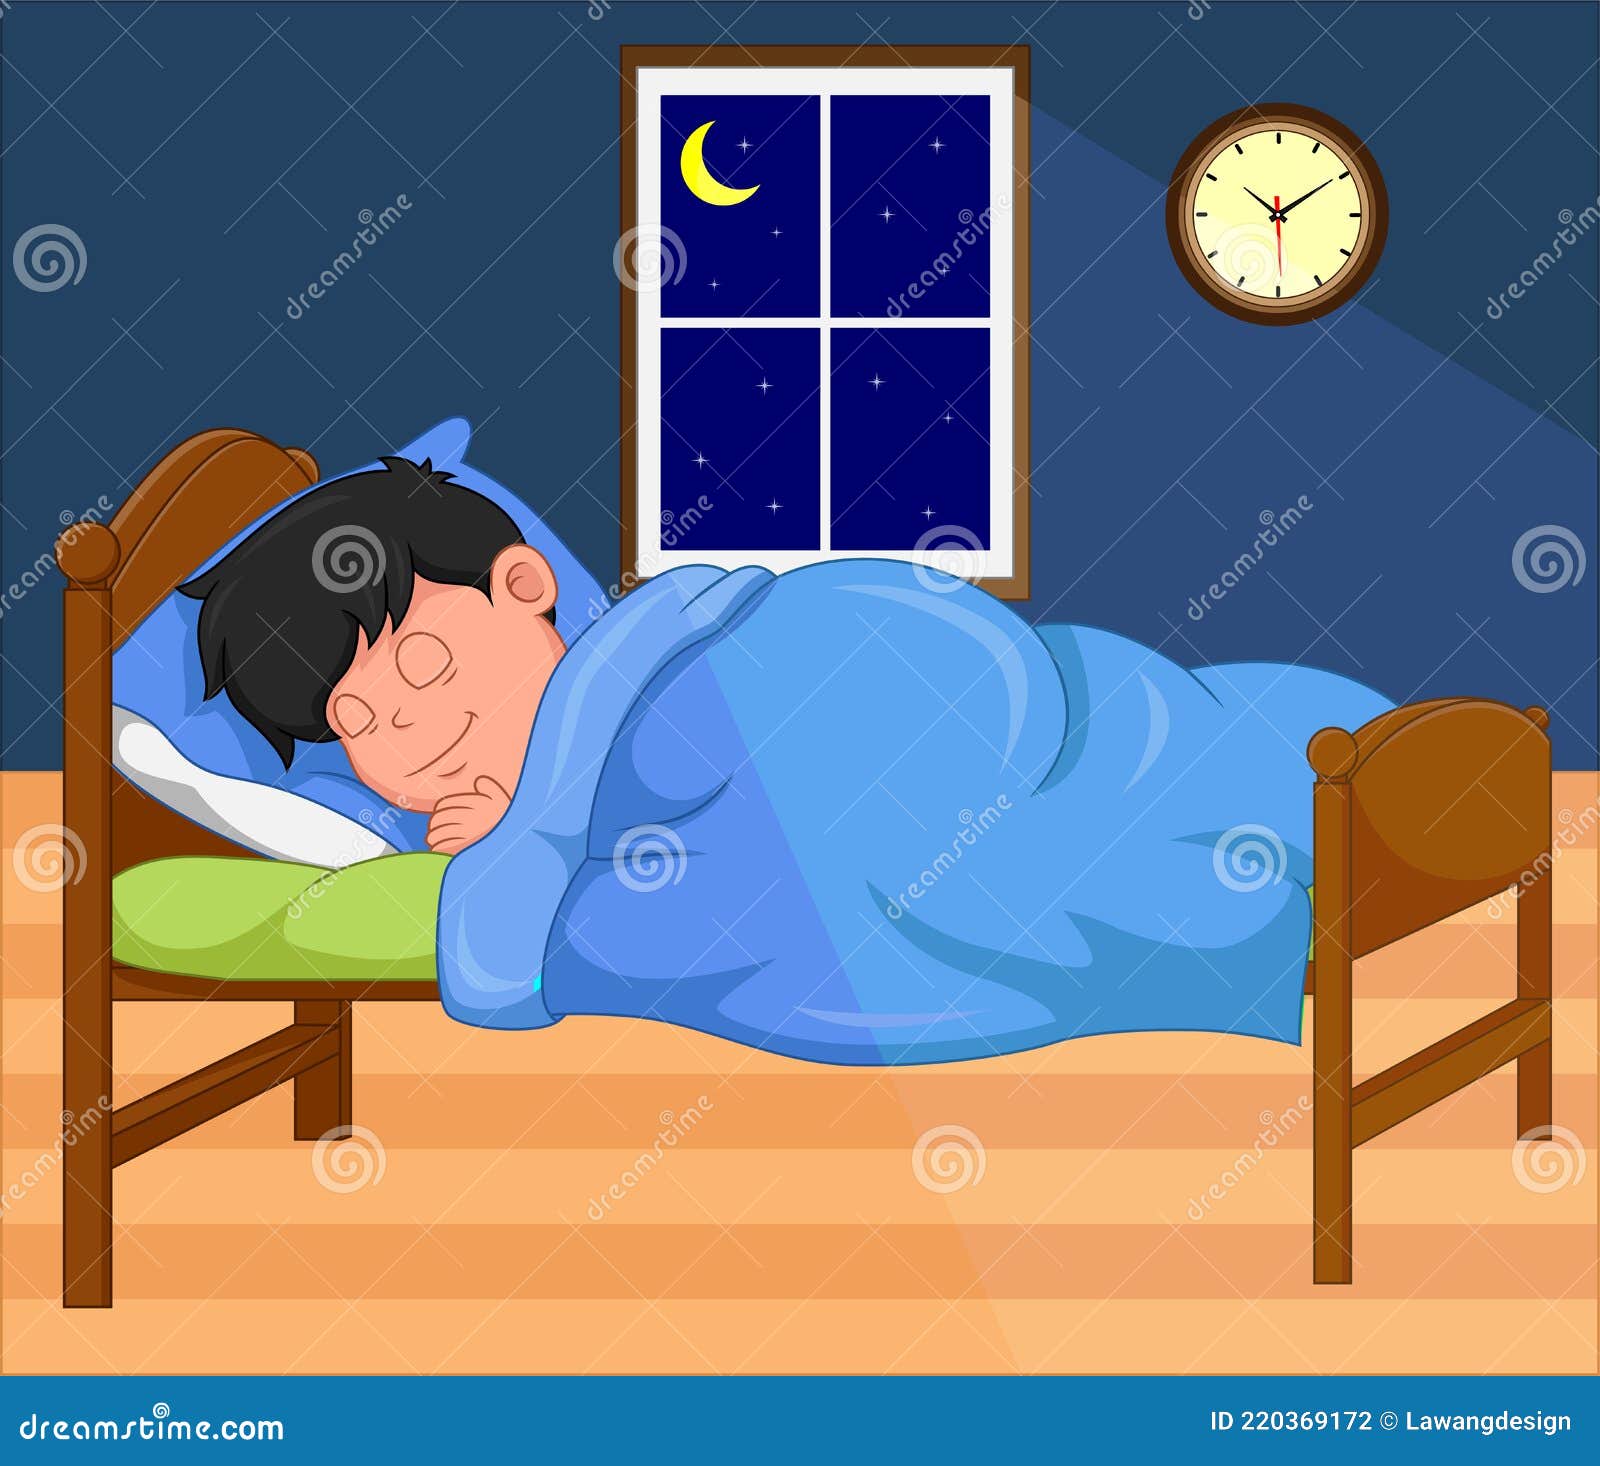 Cartoon Boy Sleeping at Night in Bedroom Stock Vector - Illustration of  evening, happy: 220369172